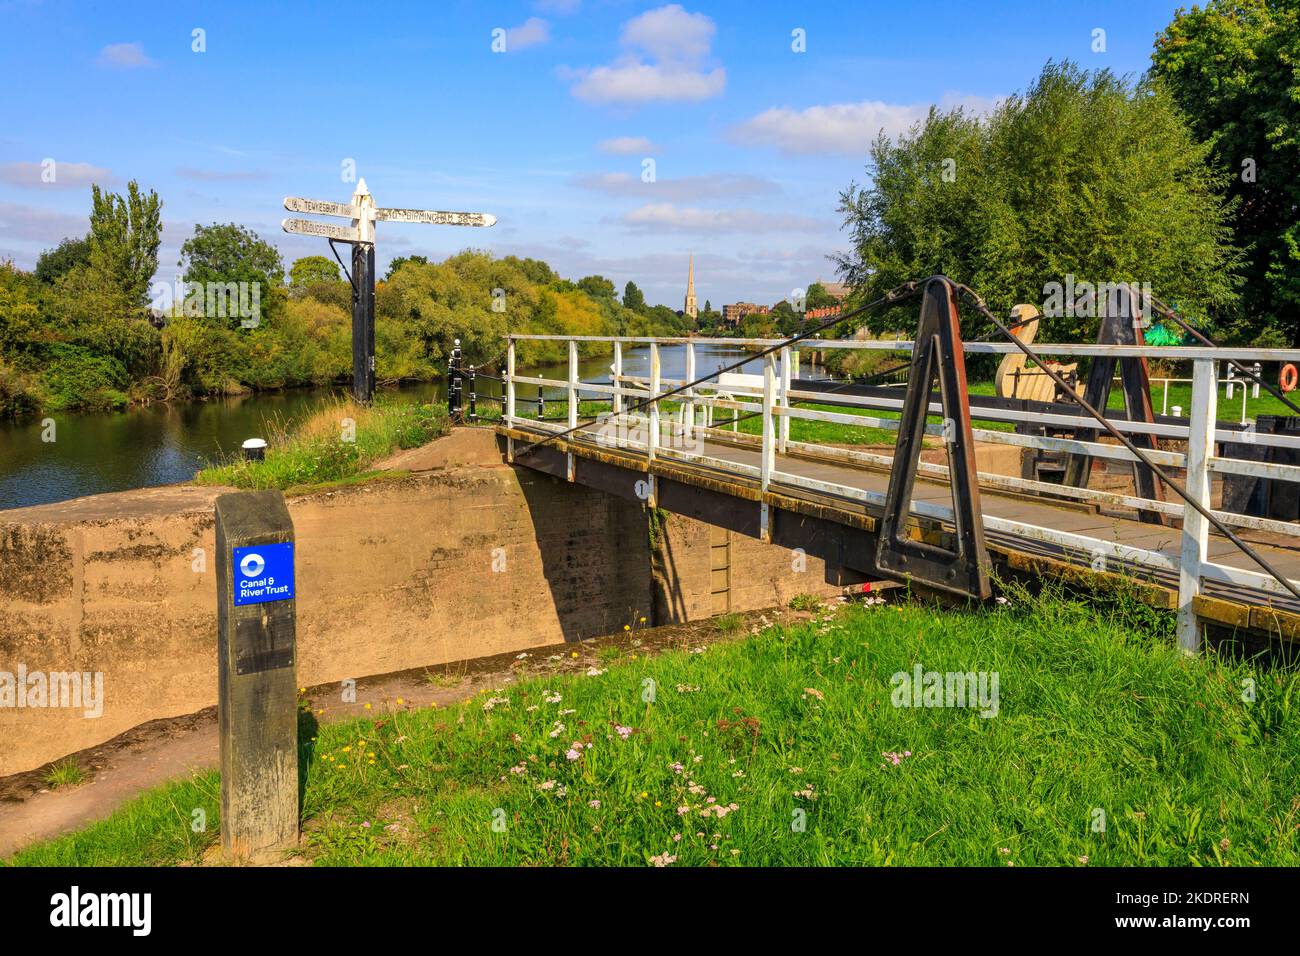 Uno storico cartello fluviale all'ingresso di Diglis Locks e Worcester attracca sul fiume Severn, Worcester, Worcestershire, Inghilterra, Regno Unito Foto Stock